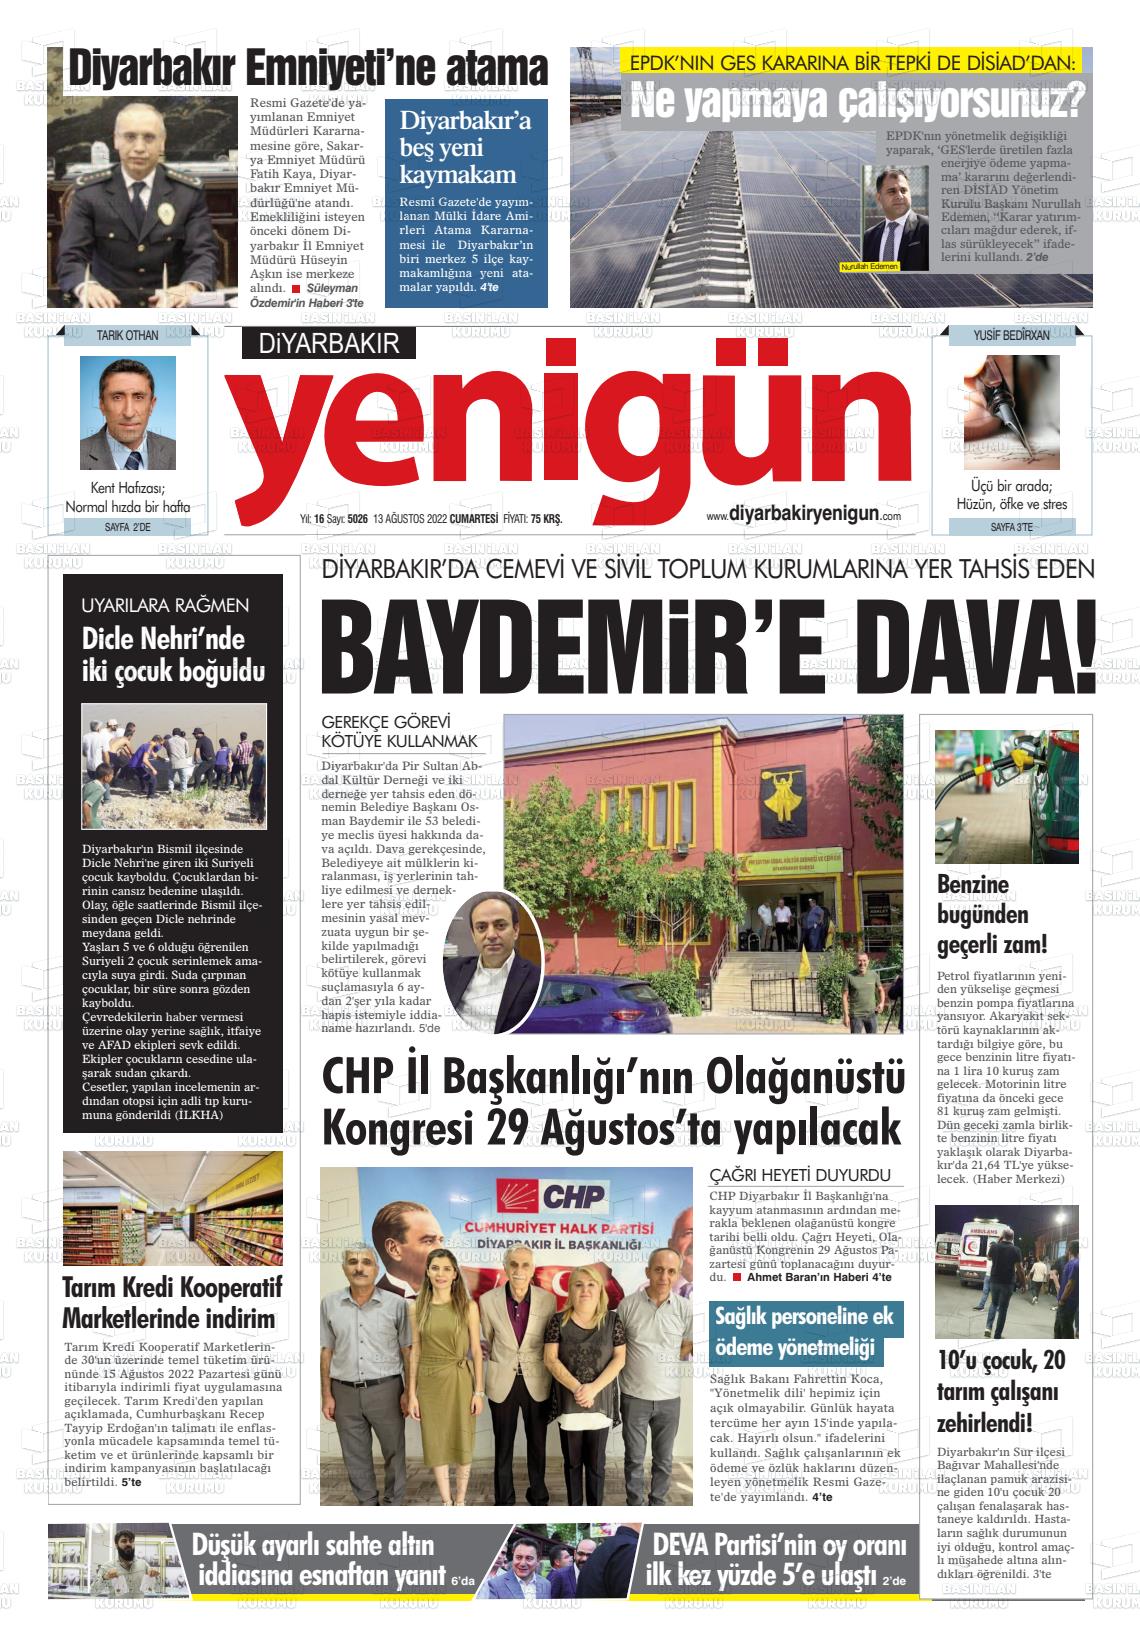 13 Ağustos 2022 Diyarbakır Yenigün Gazete Manşeti